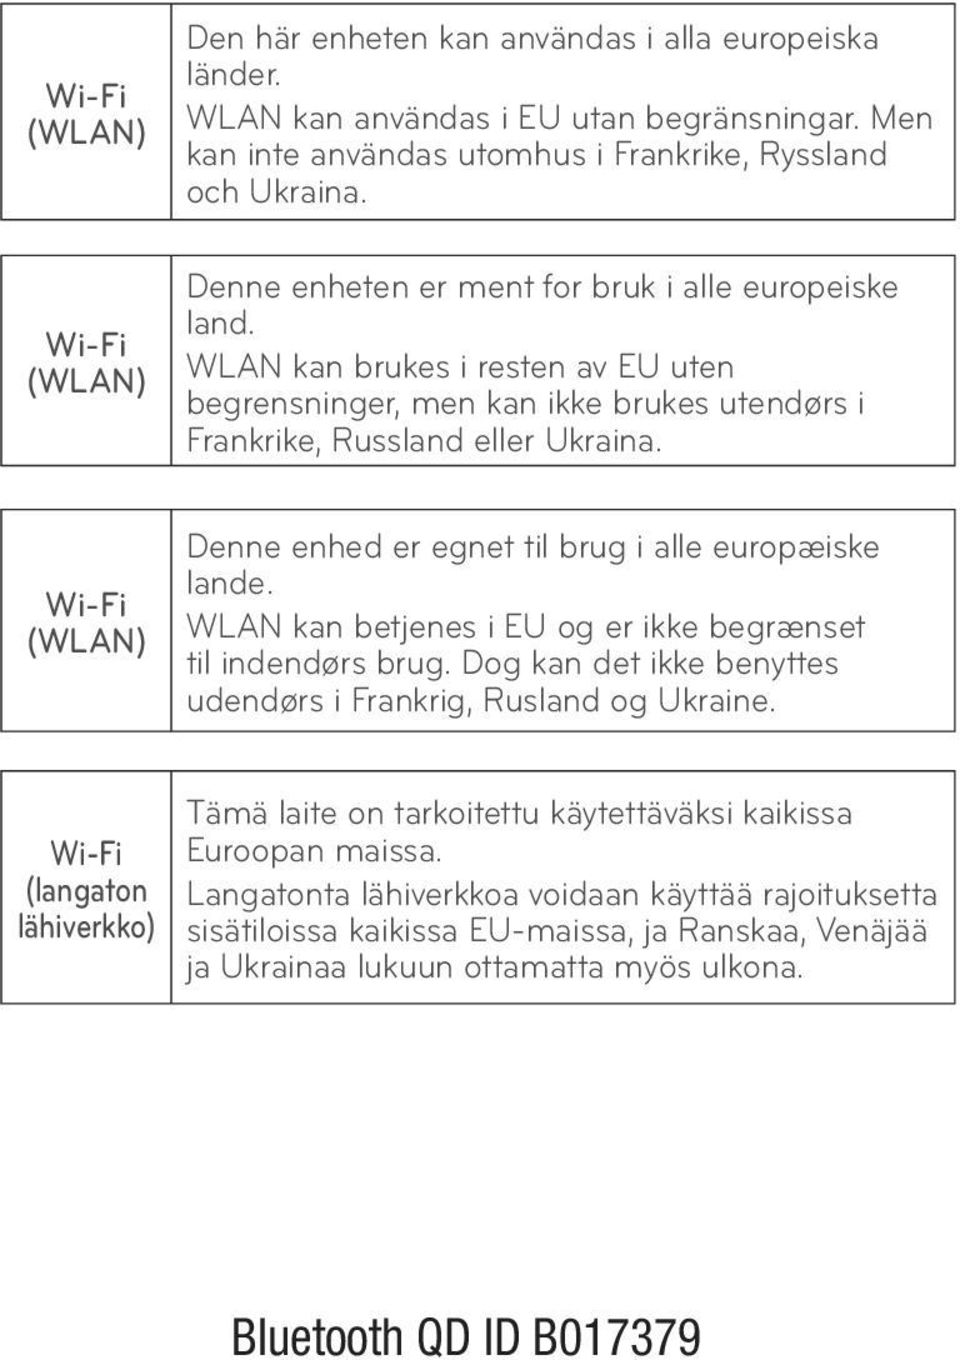 Wi-Fi (WLAN) Denne enhed er egnet til brug i alle europæiske lande. WLAN kan betjenes i EU og er ikke begrænset til indendørs brug. Dog kan det ikke benyttes udendørs i Frankrig, Rusland og Ukraine.